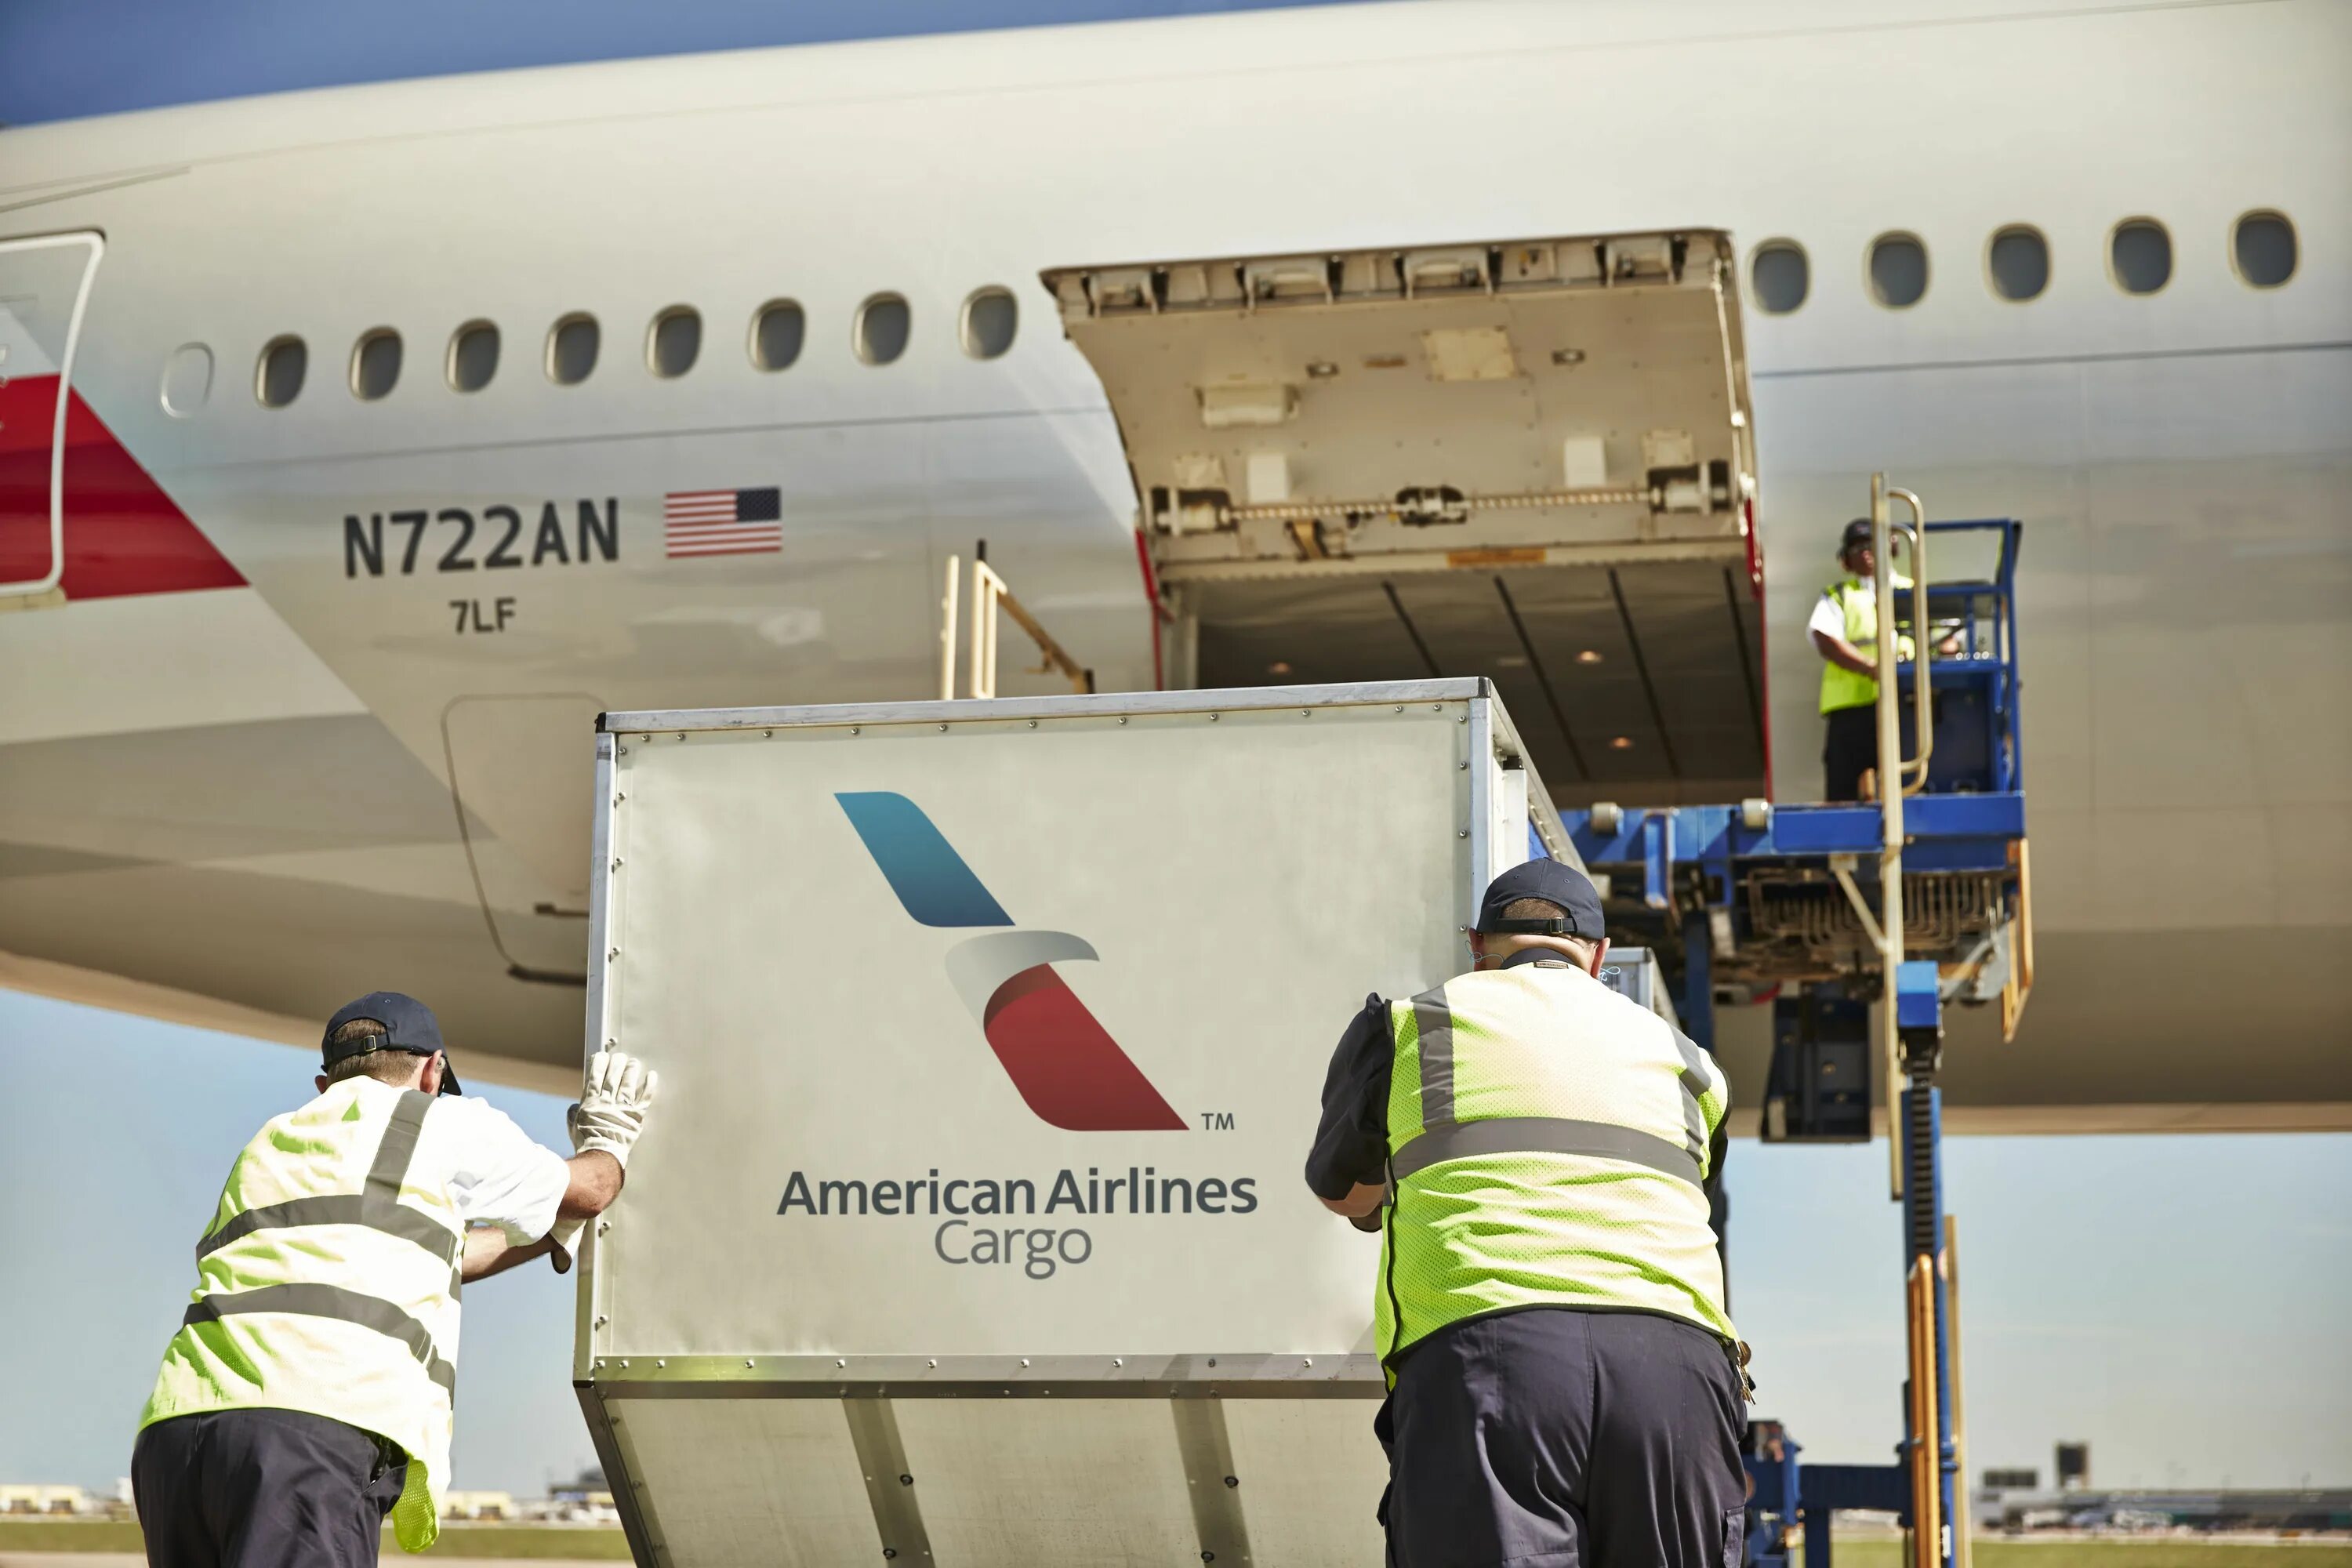 American Airlines Cargo. Американские авиакомпании грузовые. SM Air Cargo. Air America Cargo. Airlines tracking